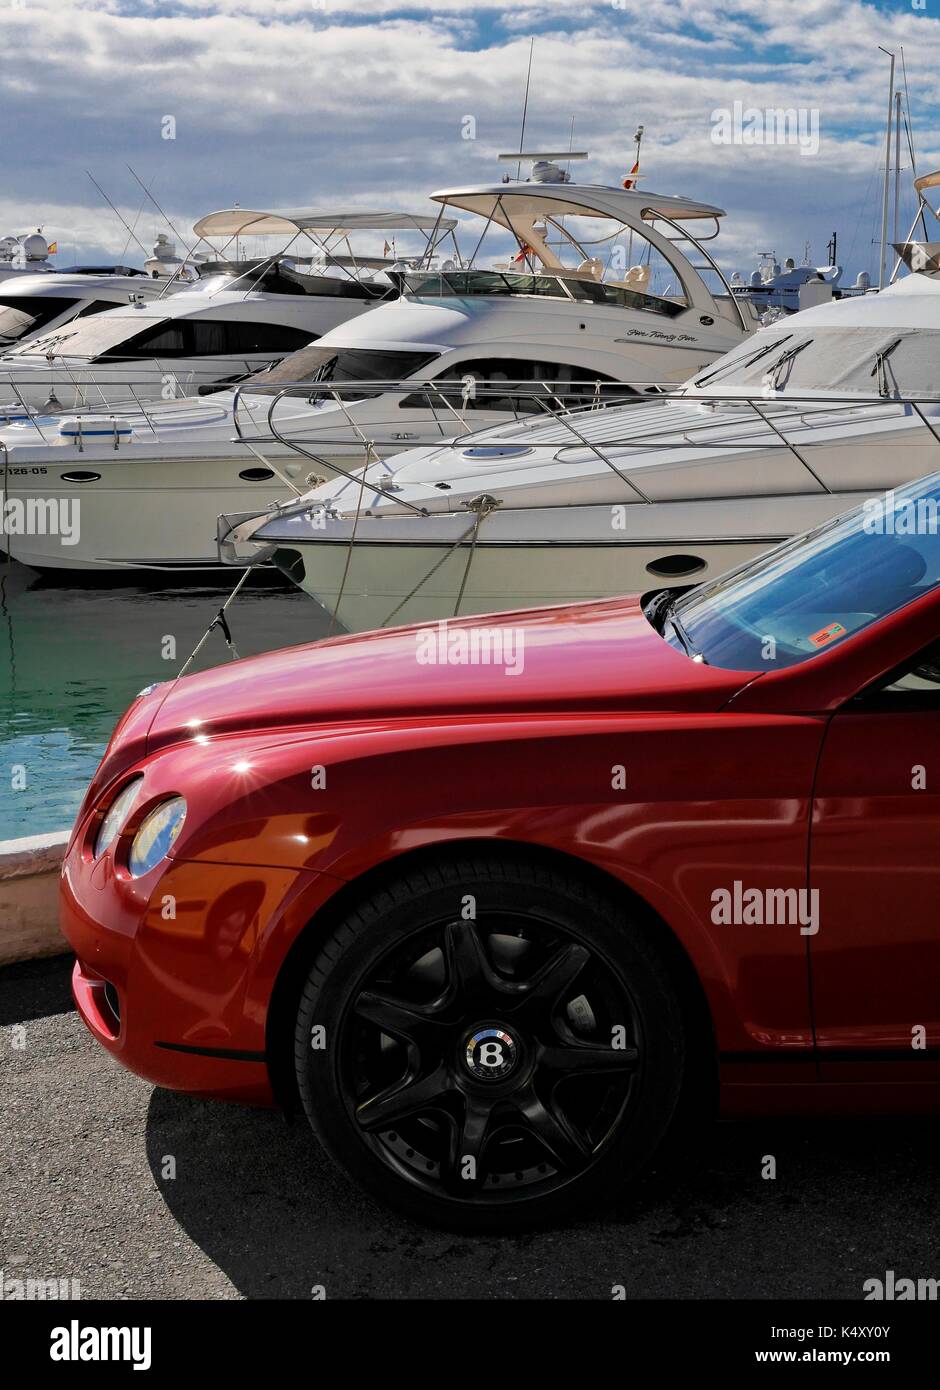 Bentley car at marina. Puerto Banus, Marbella, Costa del Sol. Stock Photo